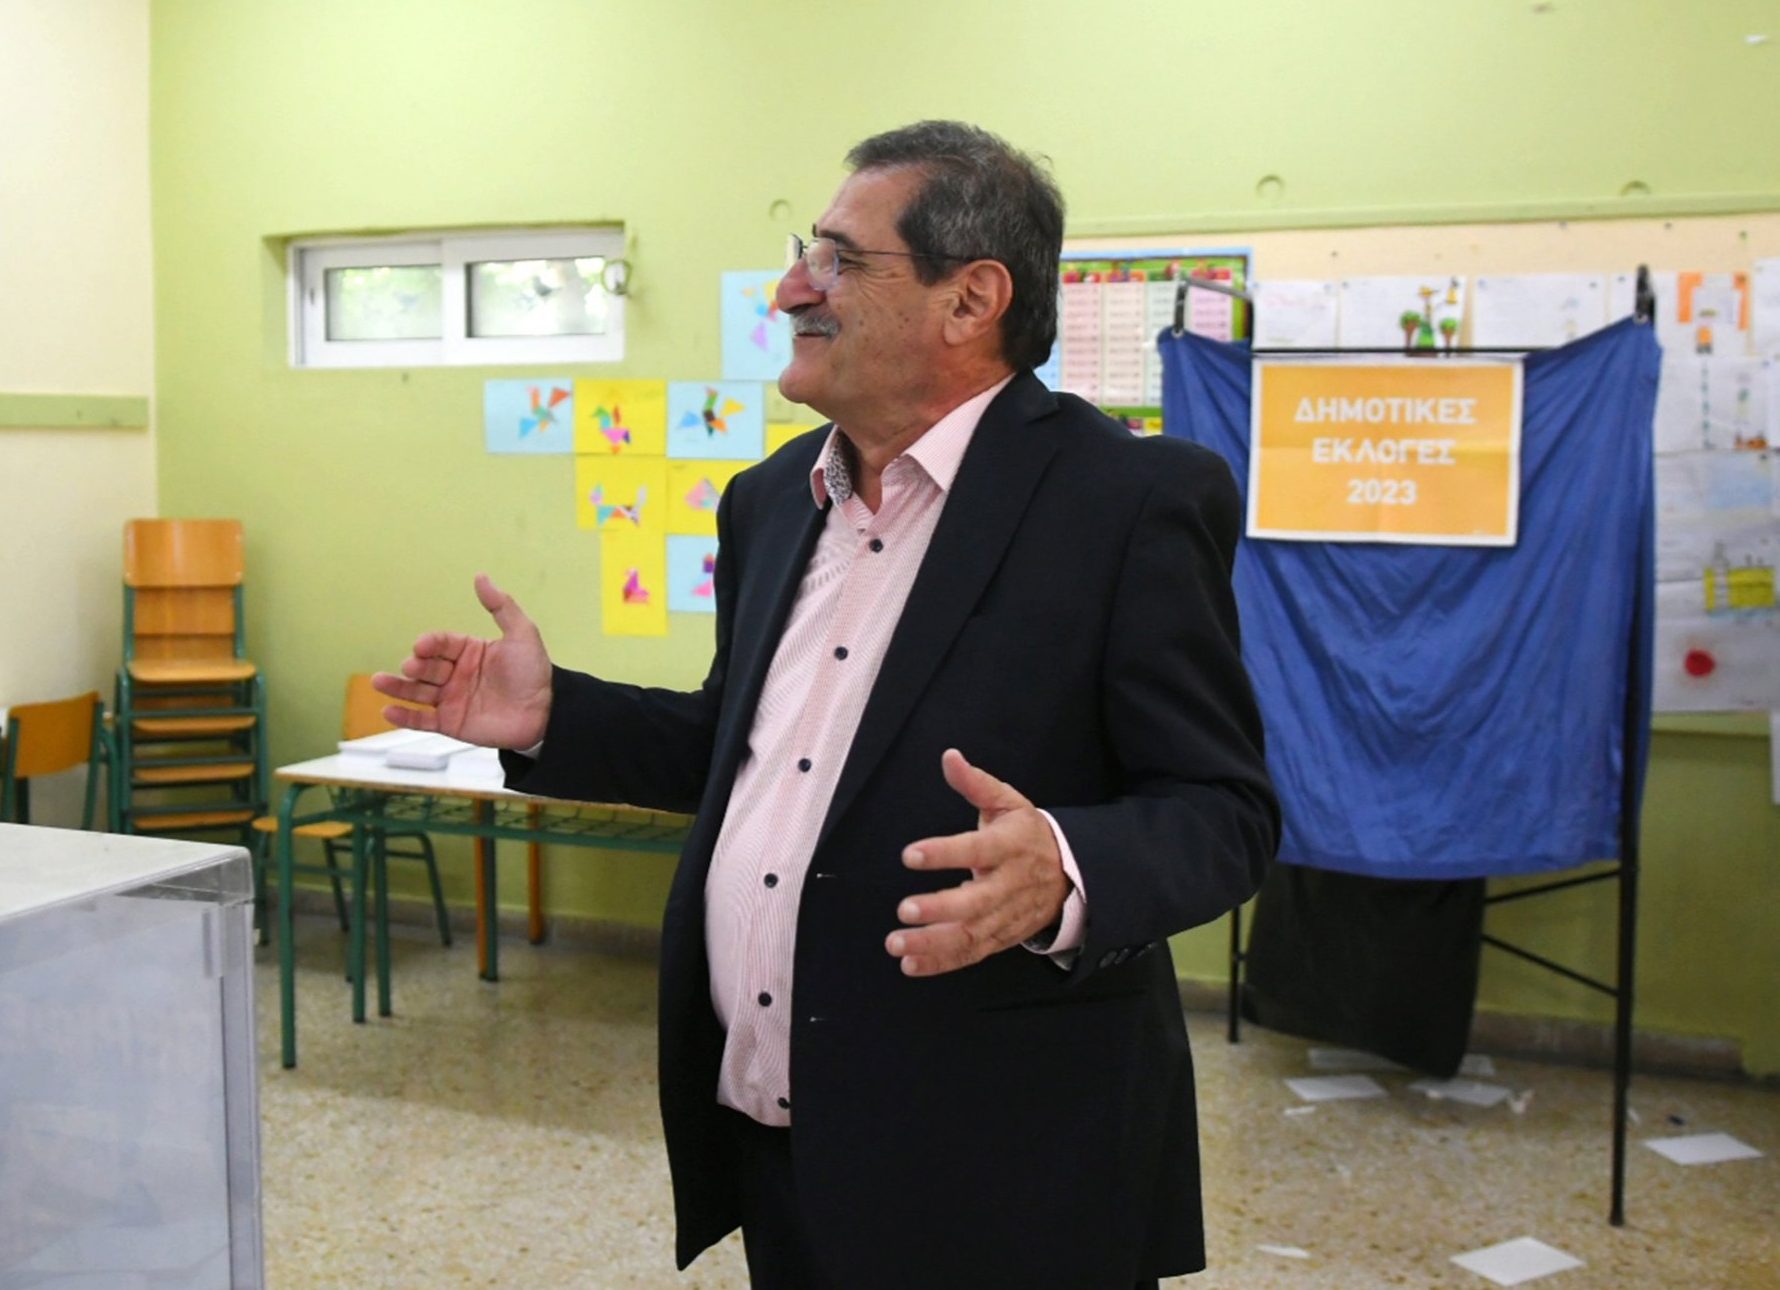 Αποτελέσματα εκλογών – Δήμος Πατρέων: Ο Πελετίδης παλεύει για εκλογή από τον πρώτο γύρο